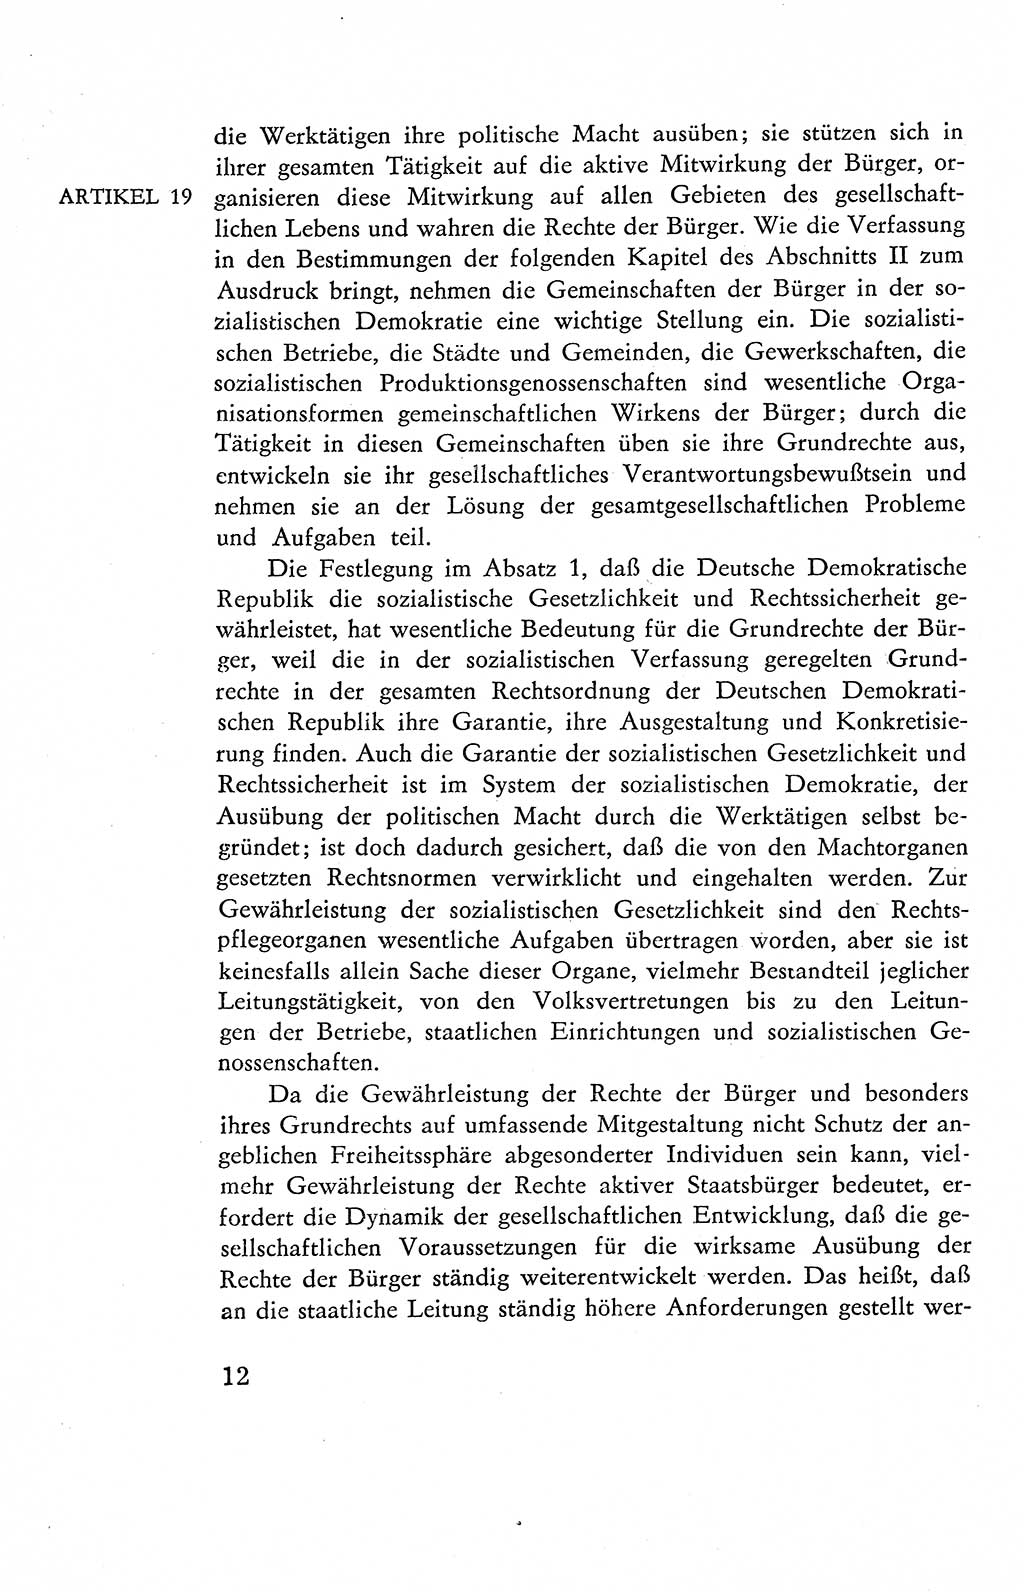 Verfassung der Deutschen Demokratischen Republik (DDR), Dokumente, Kommentar 1969, Band 2, Seite 12 (Verf. DDR Dok. Komm. 1969, Bd. 2, S. 12)